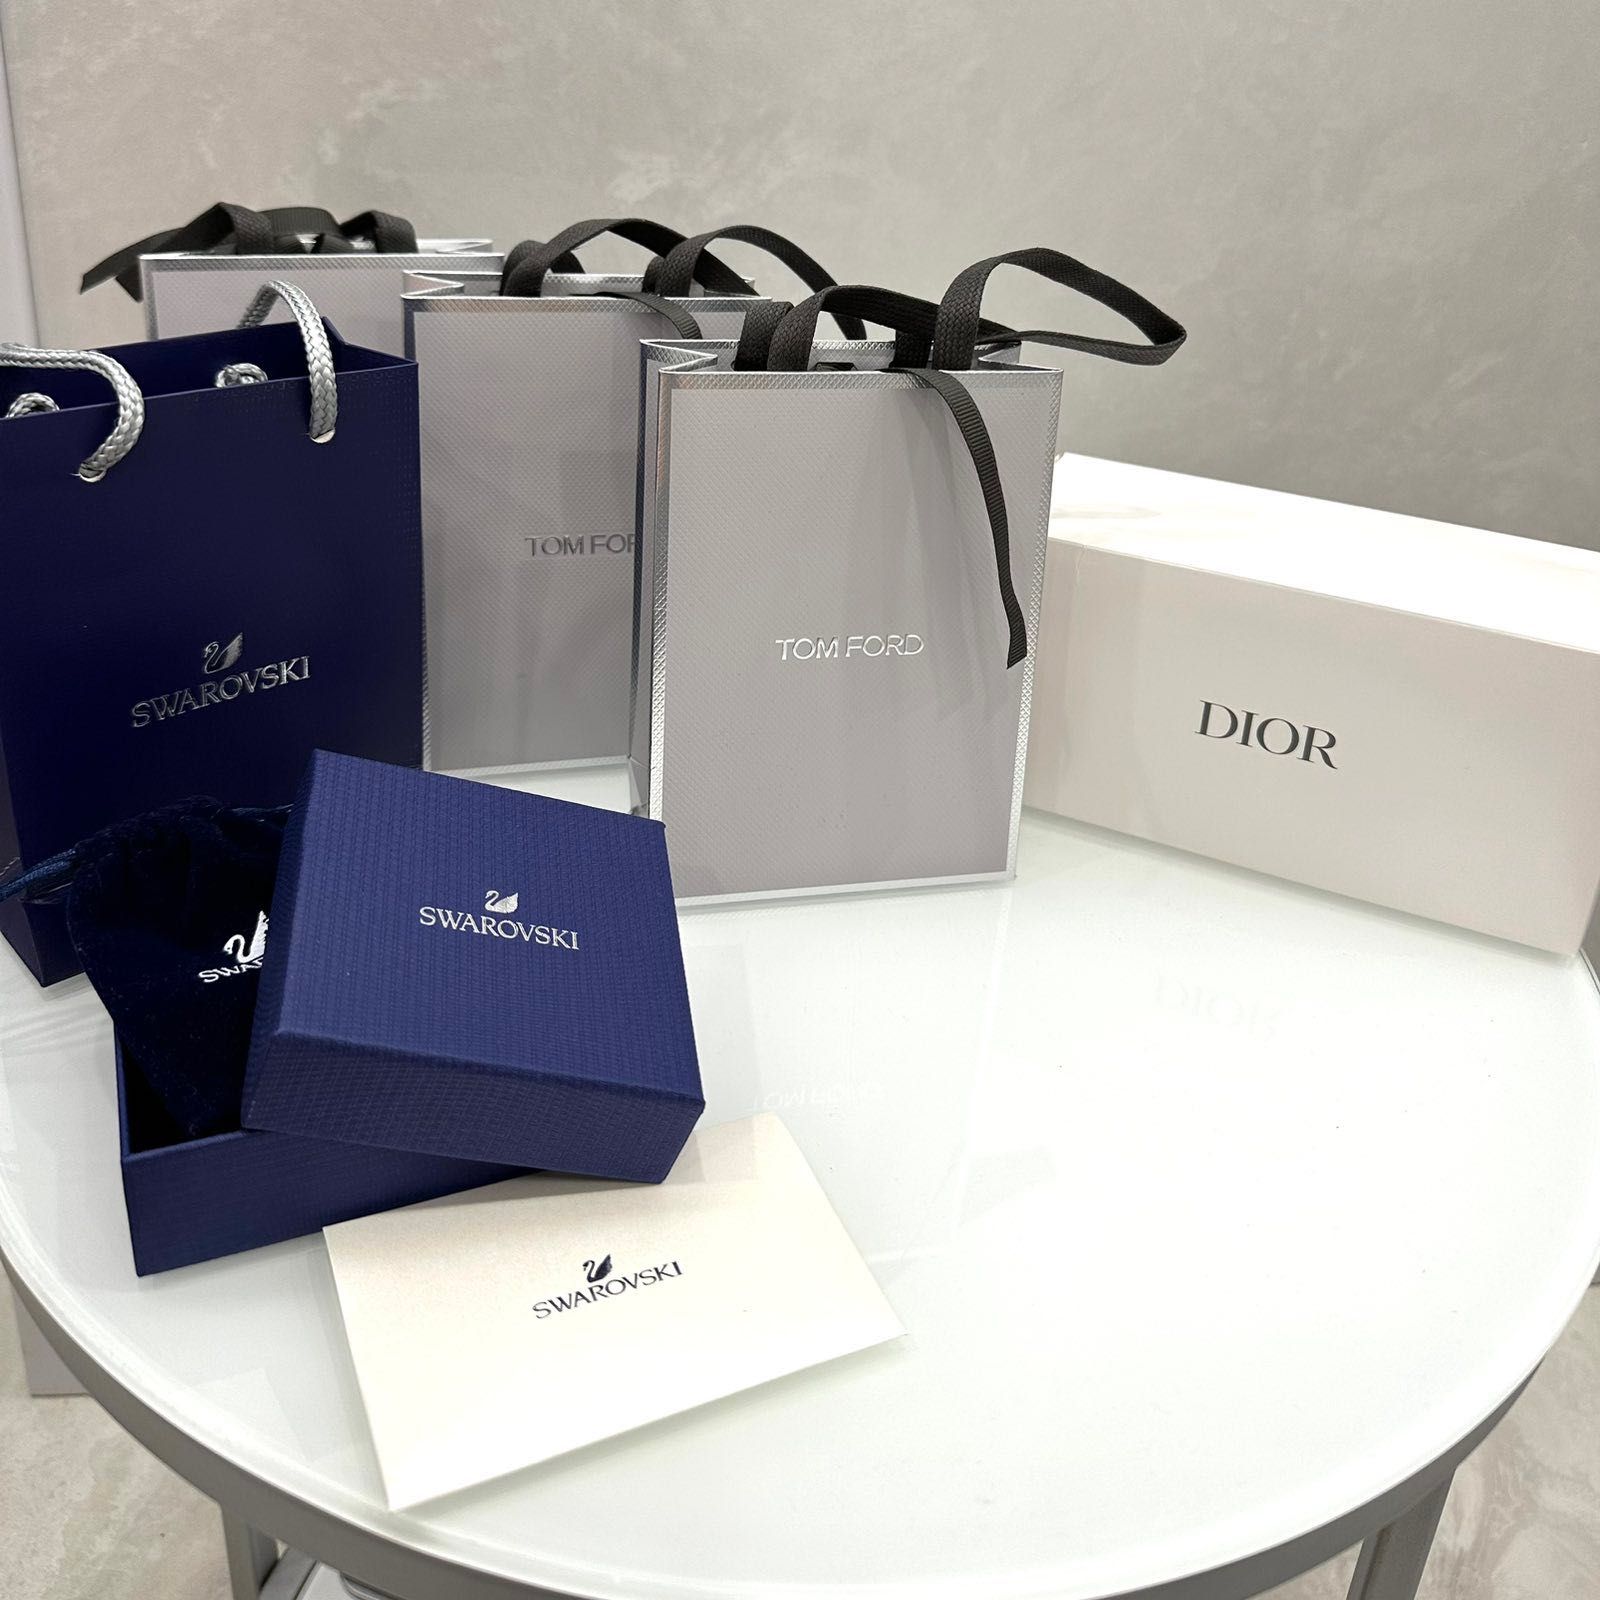 Брендовий пакет, подарункове пакування (Tom Ford, Dior, Swarovski)